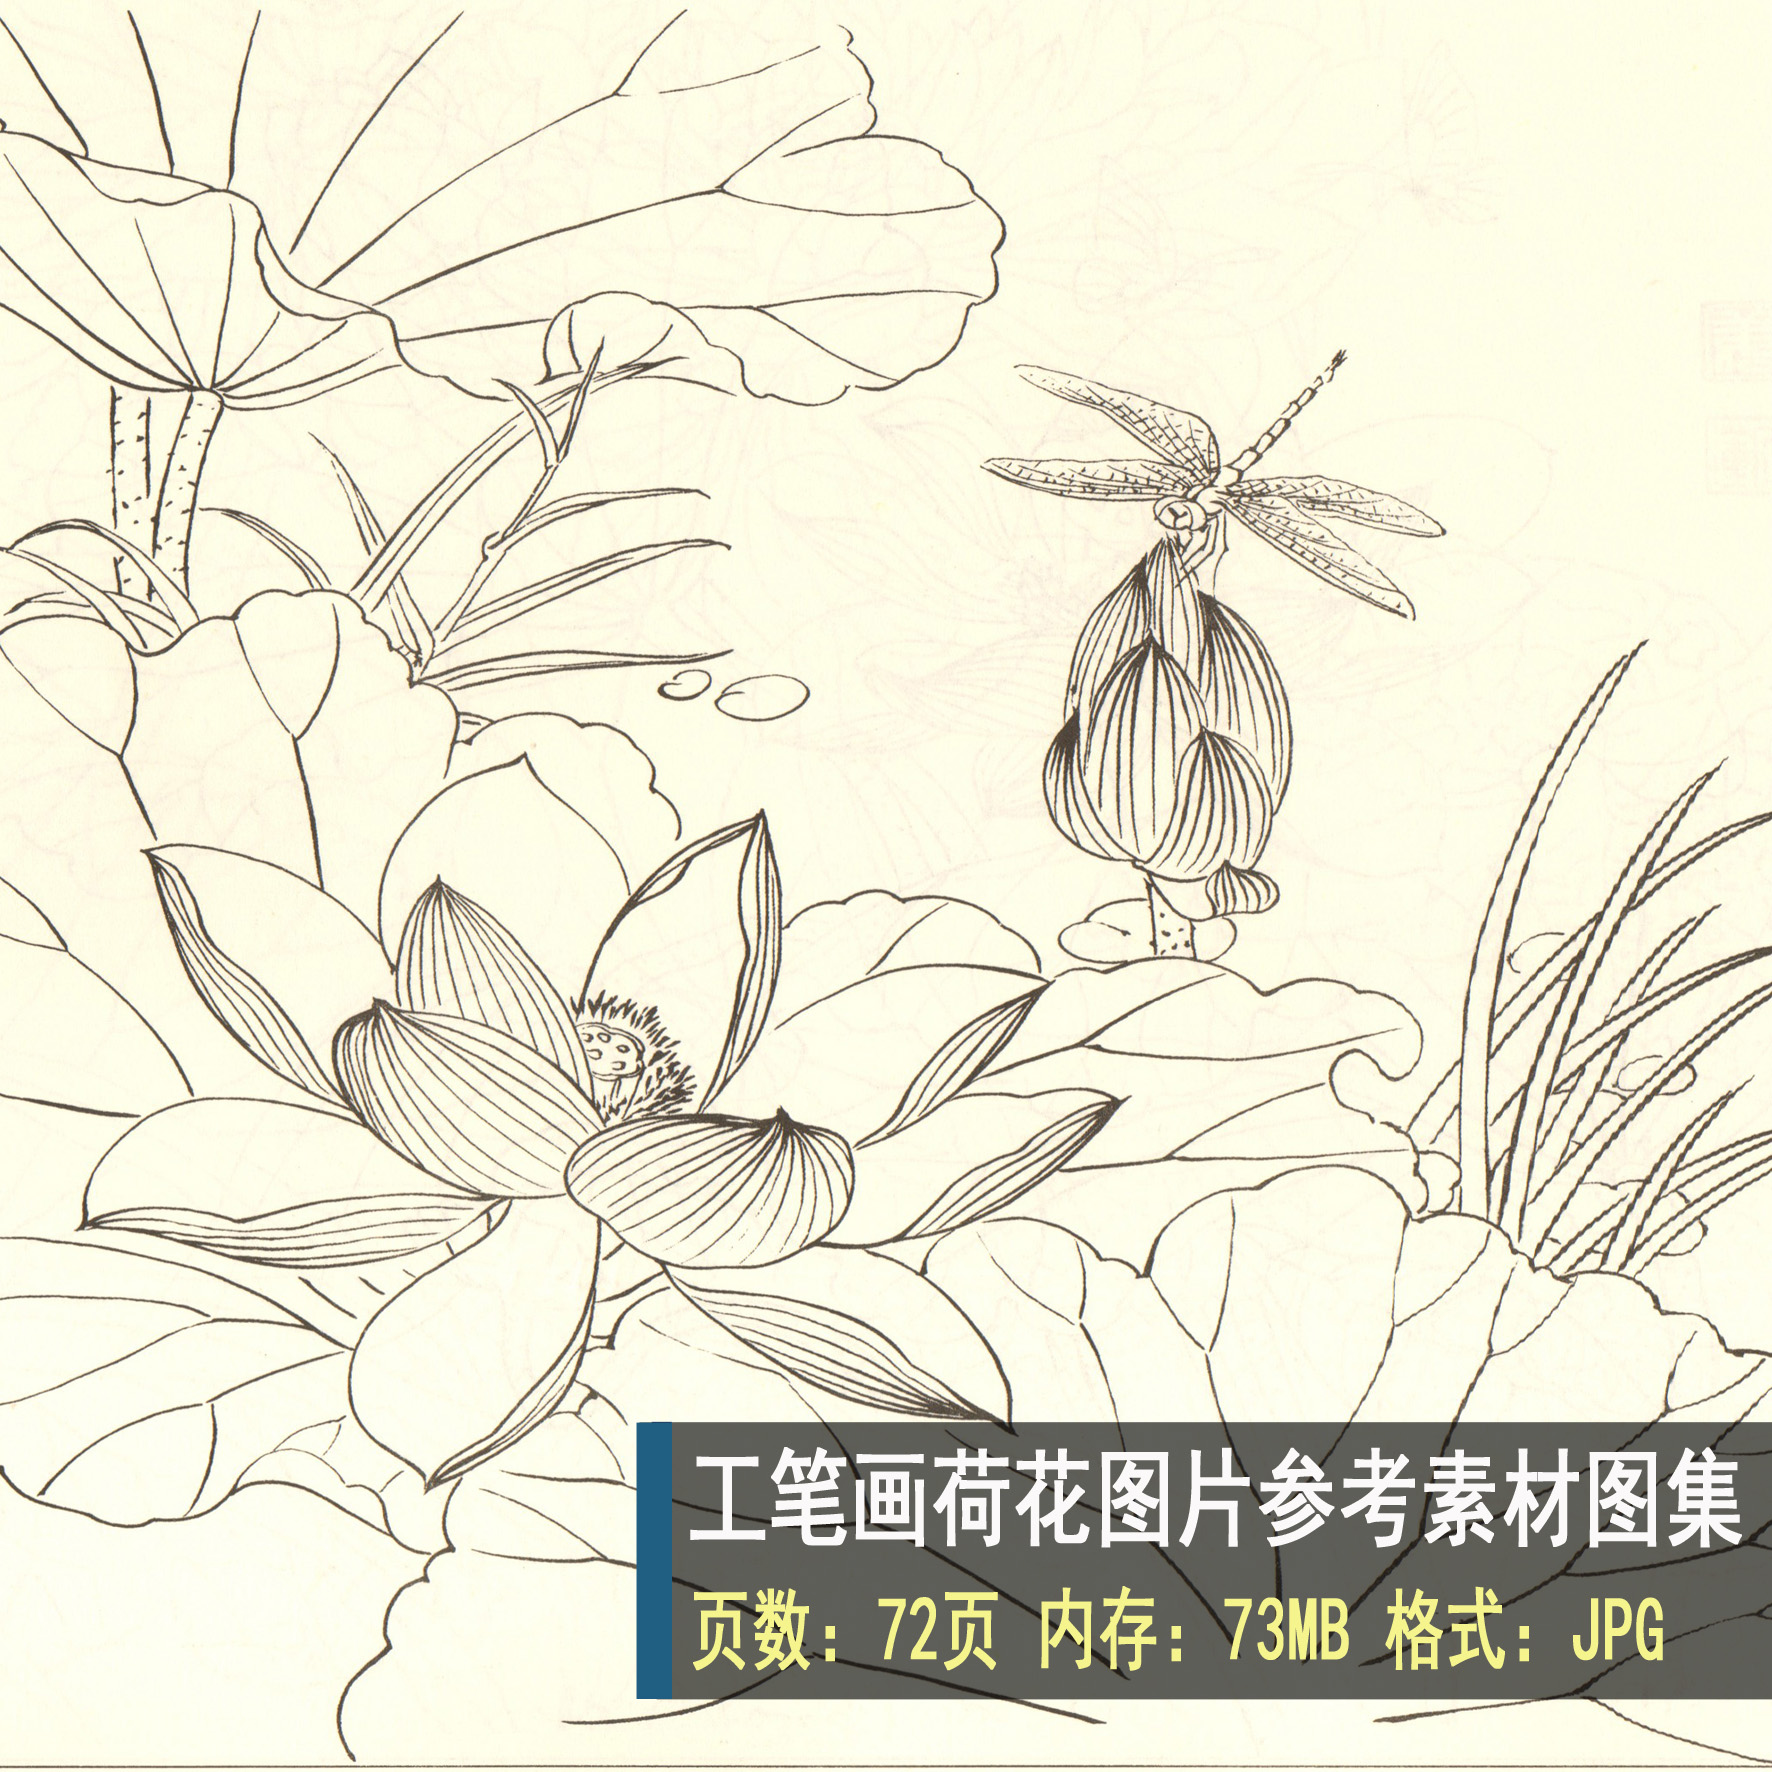 831 高清白描花卉图片素材 白描荷花线稿作品参考素材 设计素材